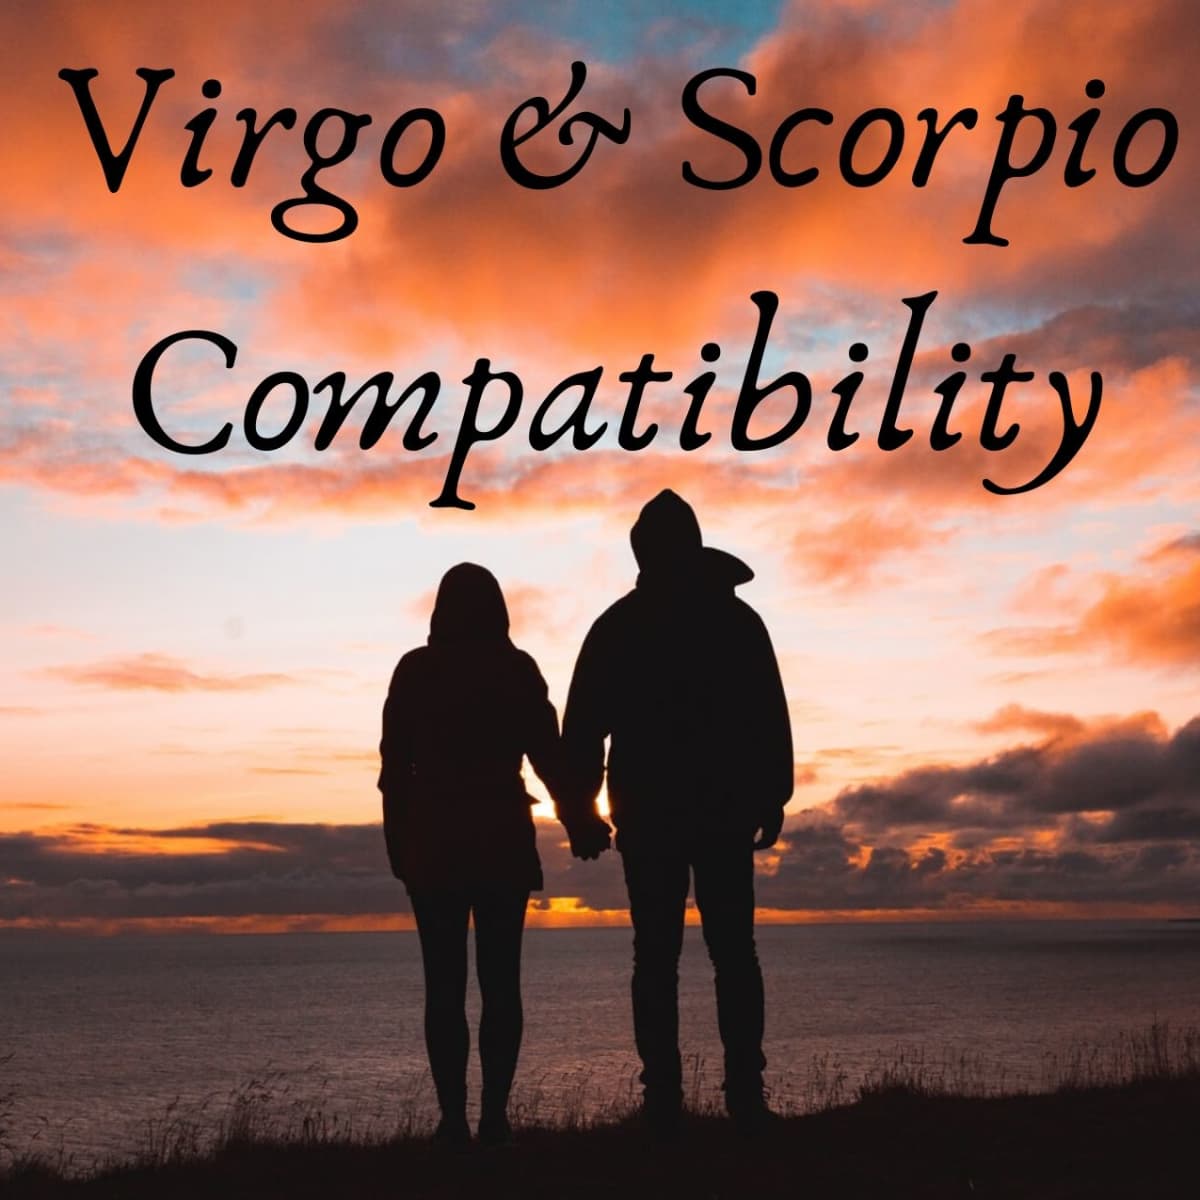 Virgo sexually and scorpio Virgo &